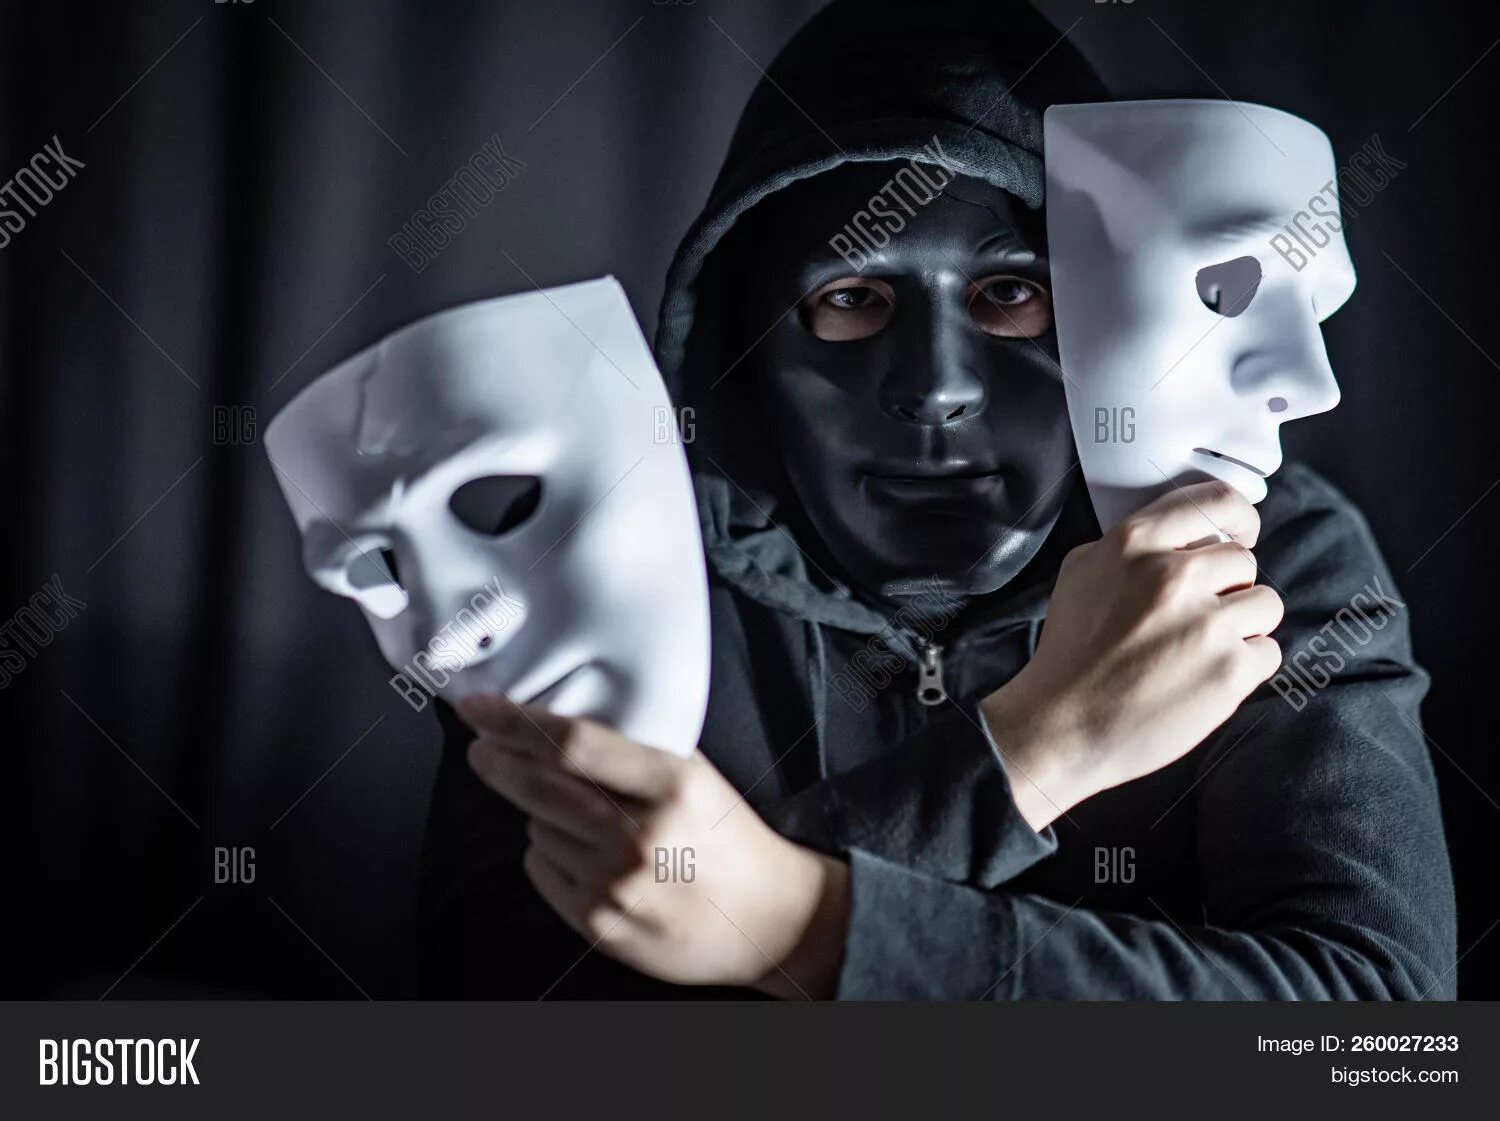 Они сняли маски. Человек в маске. Человек надевает маску. Человек в театральной маске. Человек в белой маске.